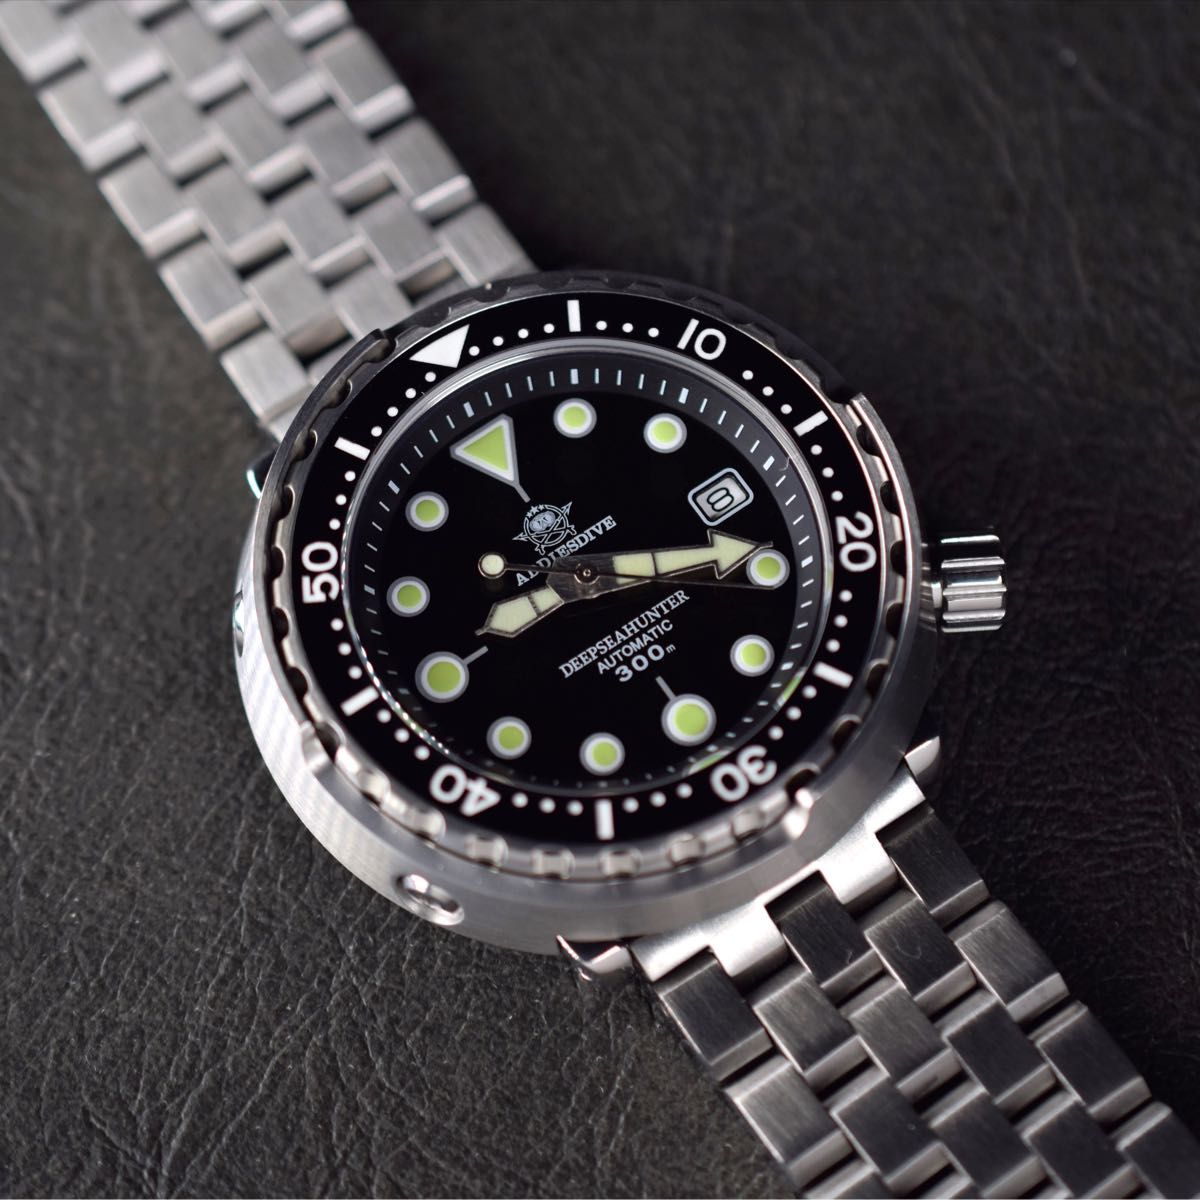 メンズ腕時計 ダイバーズウォッチ ツナ缶 腕時計 機械式 潜水 海 川 デカ厚 オマージュ  ダイバー